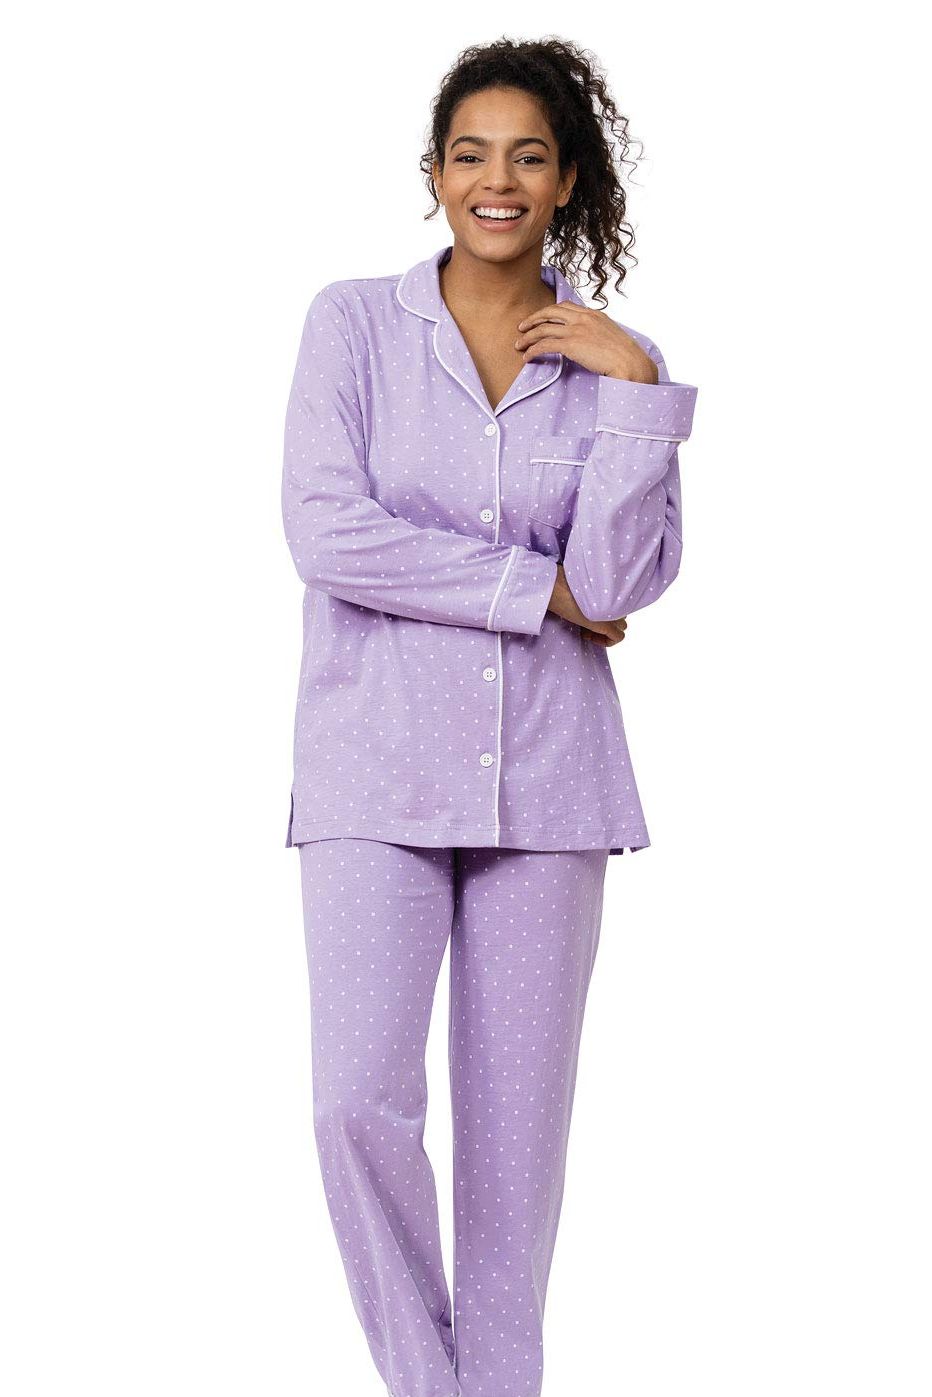 Short-Sleeve Boyfriend Capri Pajamas in Women's Cotton Pajamas